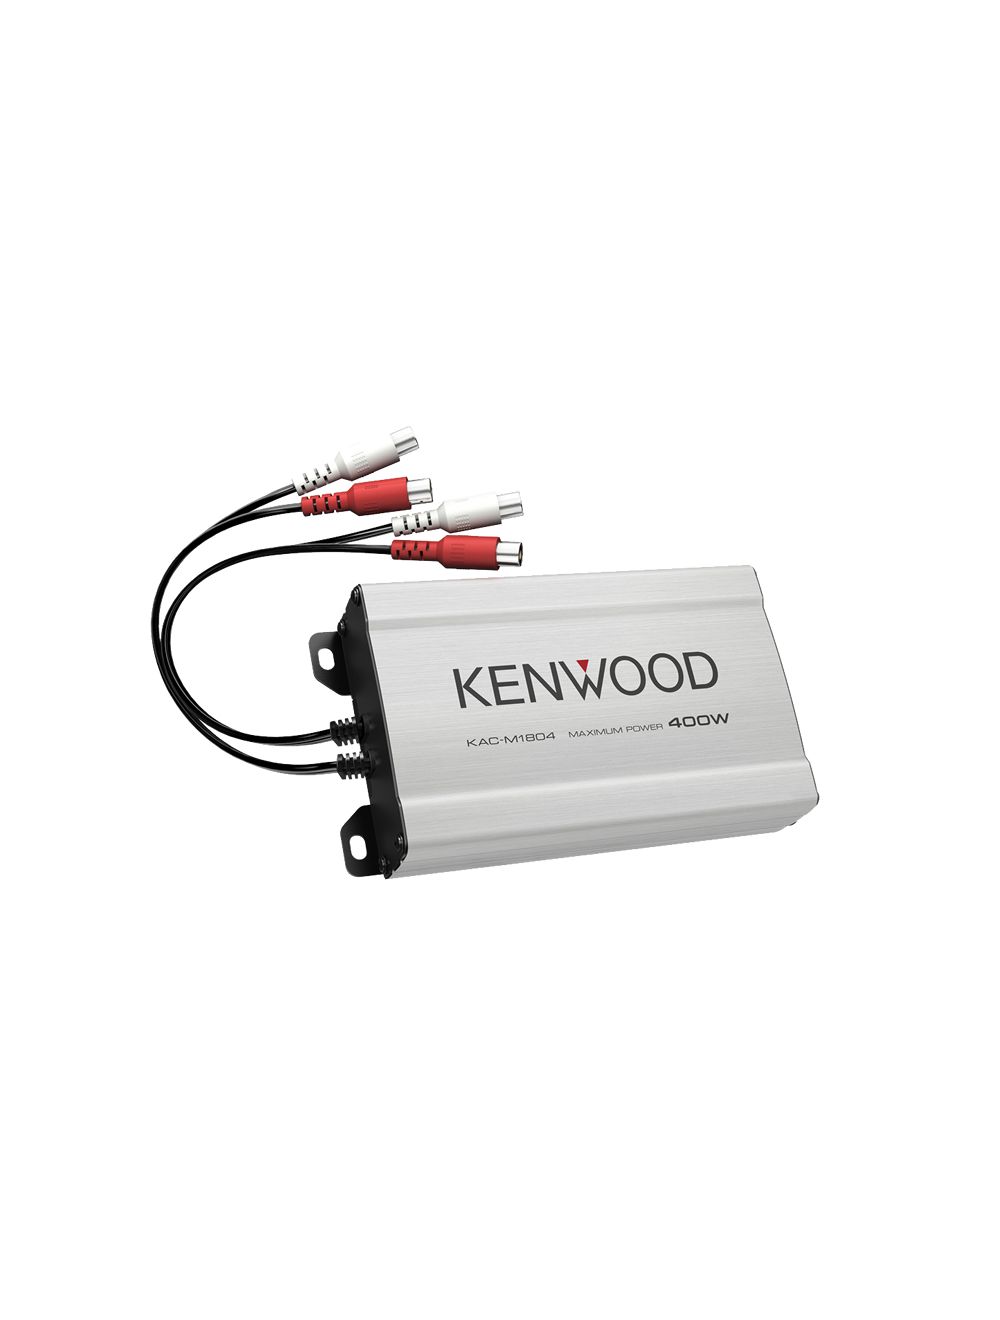 Kenwood KAC-M1804 4-Channel Digital Amplifier